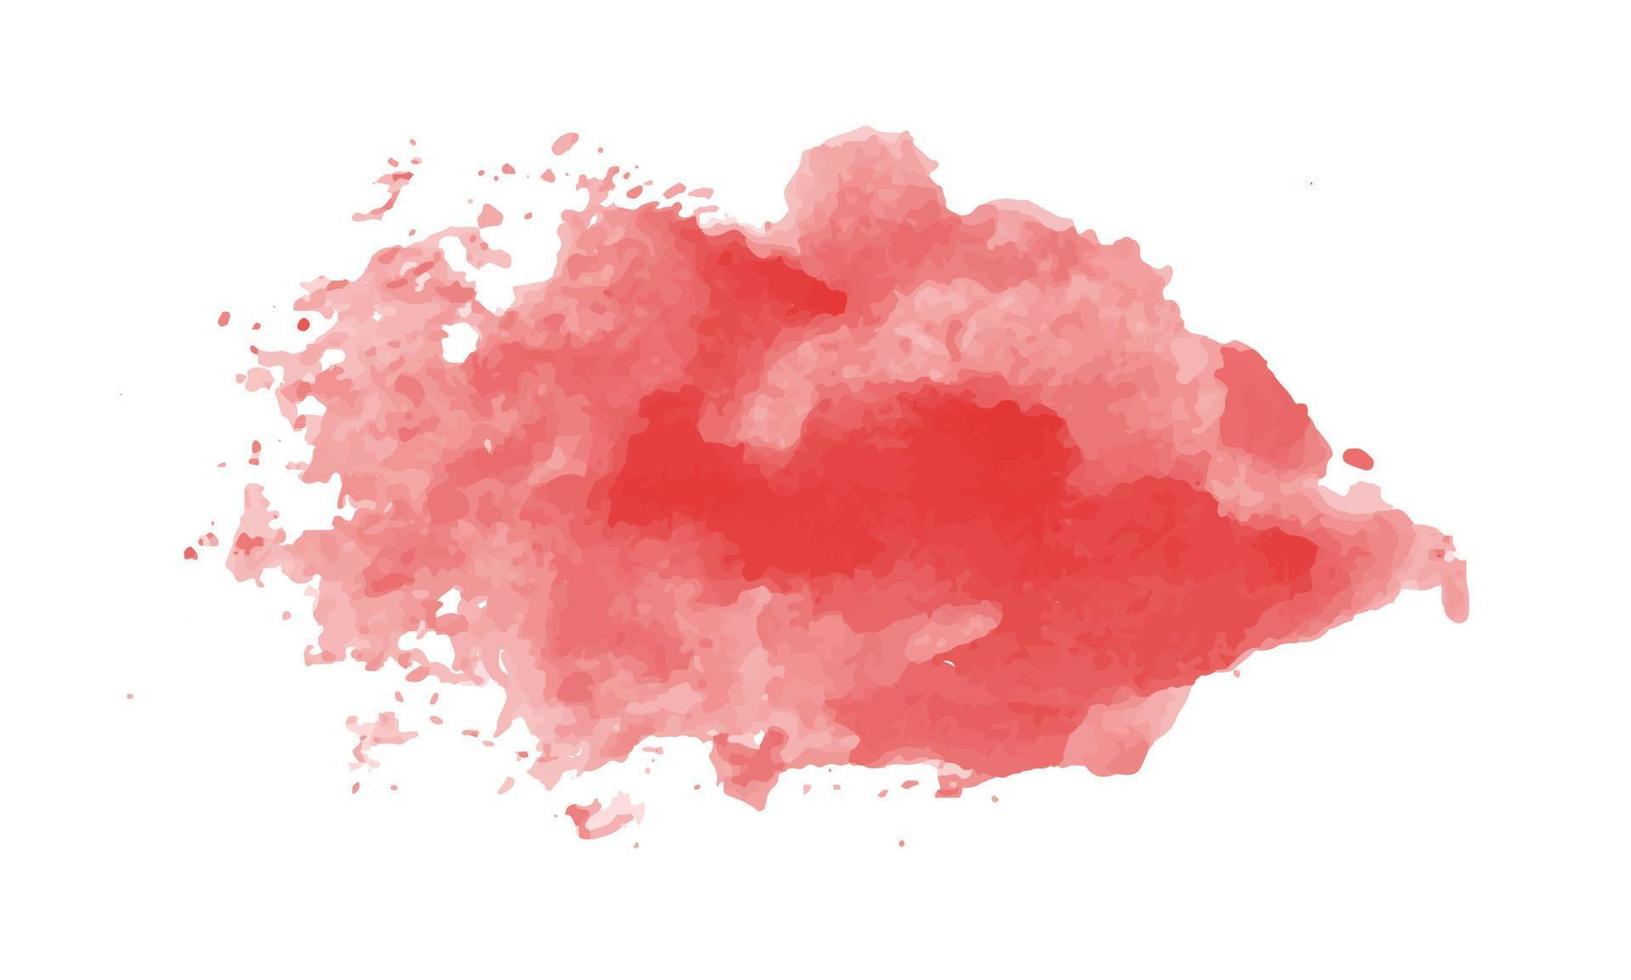 abstrakt modern handmålad design med akvarell fläck penseldrag av rosa rött moln, isolerad på vit bakgrund. vektor som används som dekorativt designkort, banderoll, affisch, omslag, broschyr